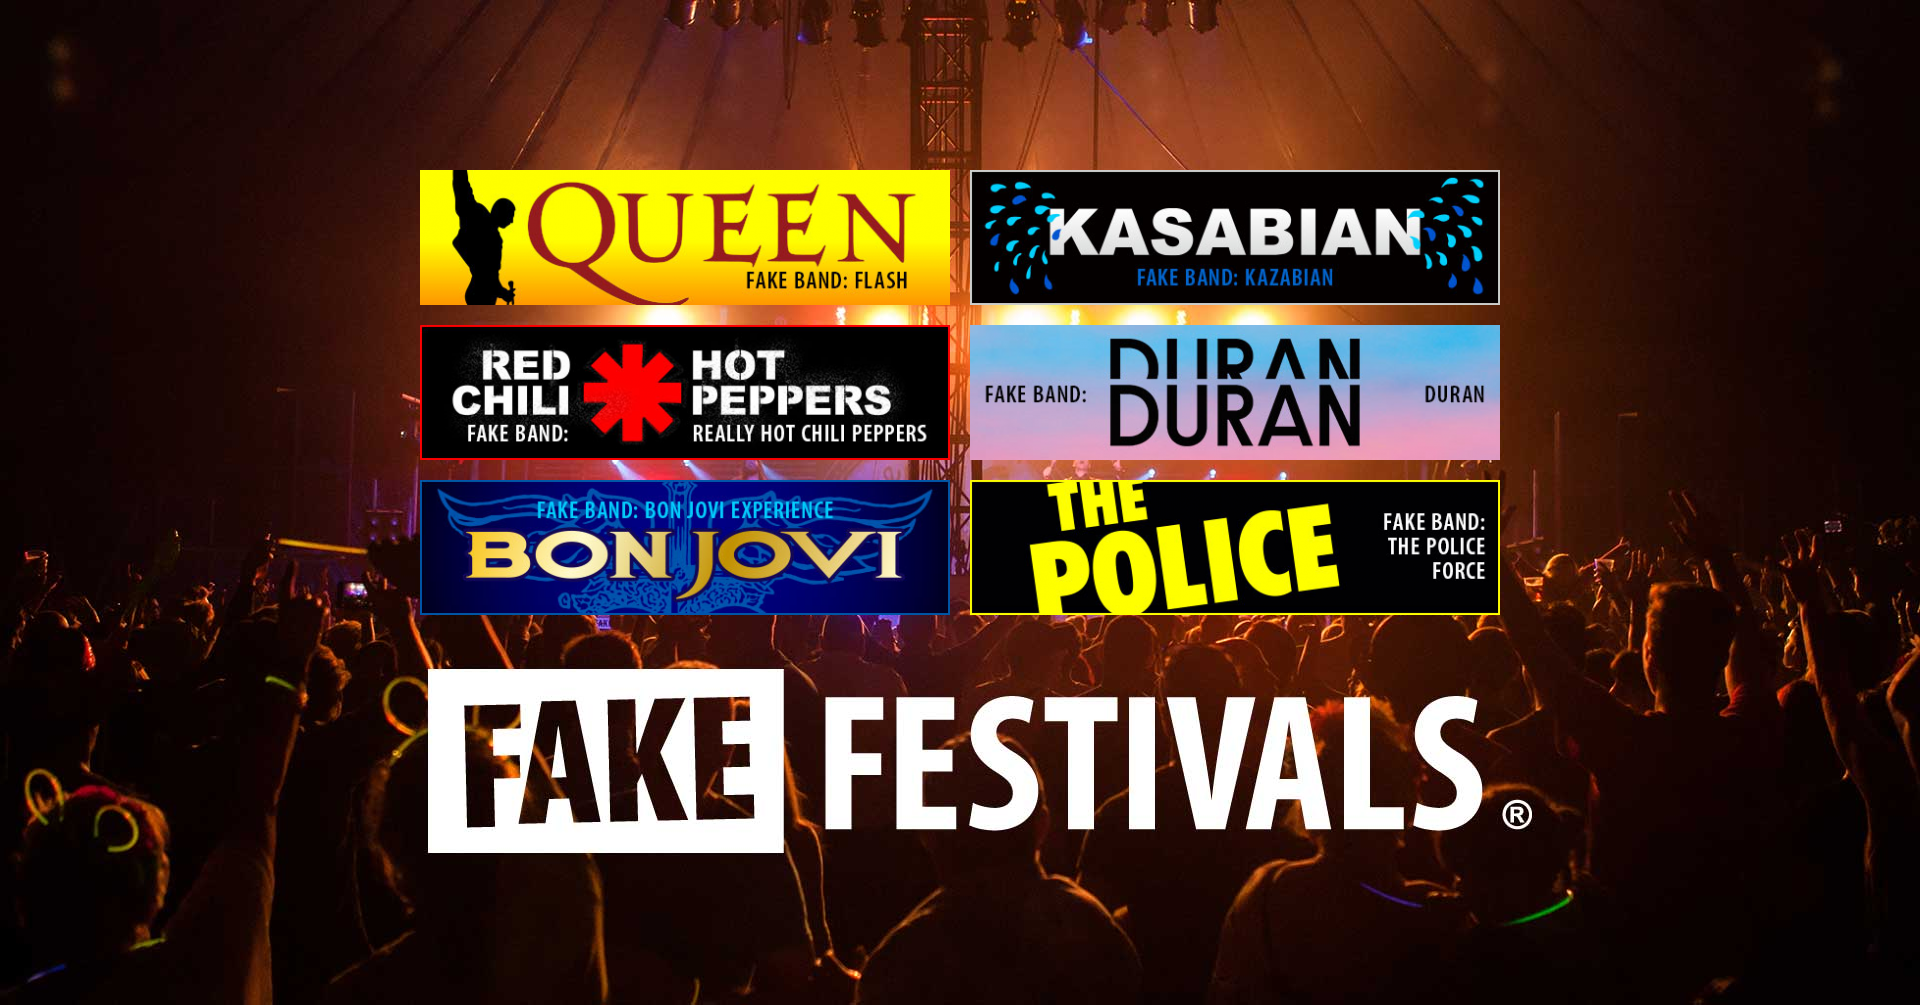 Harrogate Fake Festival 2020